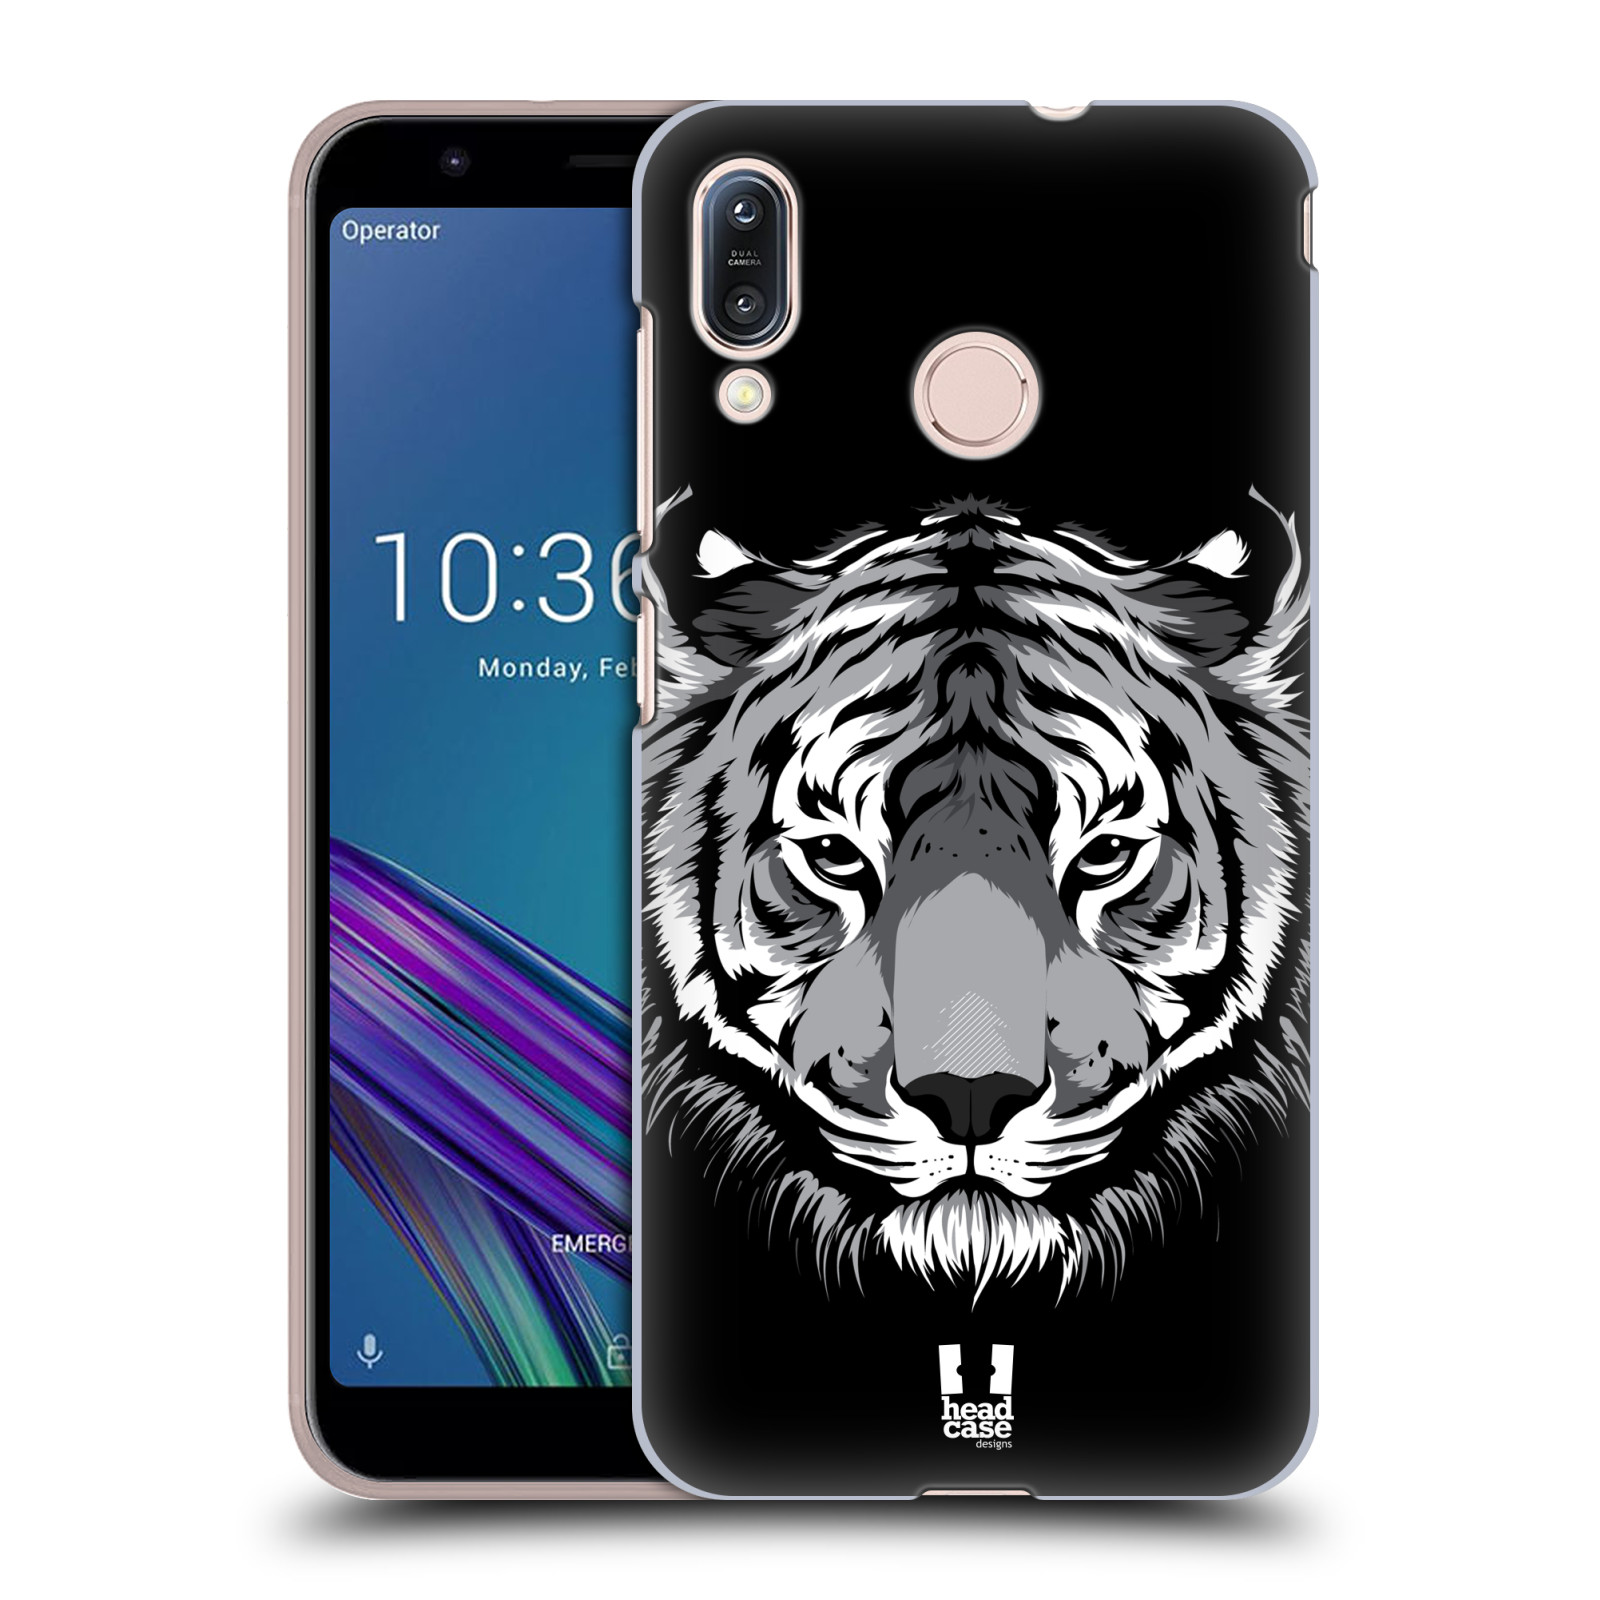 Pouzdro na mobil Asus Zenfone Max M1 (ZB555KL) - HEAD CASE - vzor Zvíře kreslená tvář 2 tygr